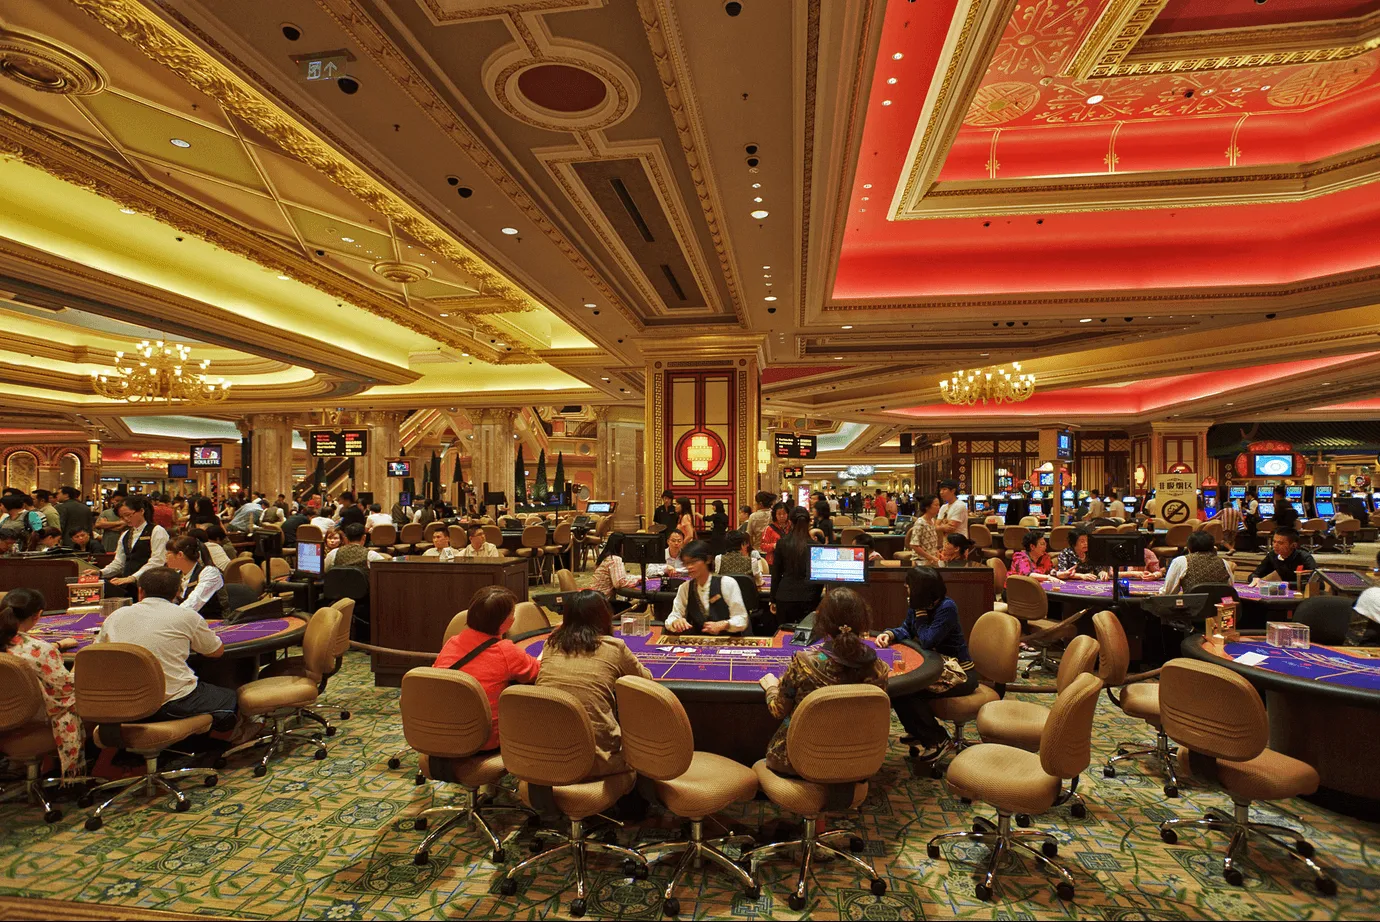 中国在线赌场和博彩合法化的前景